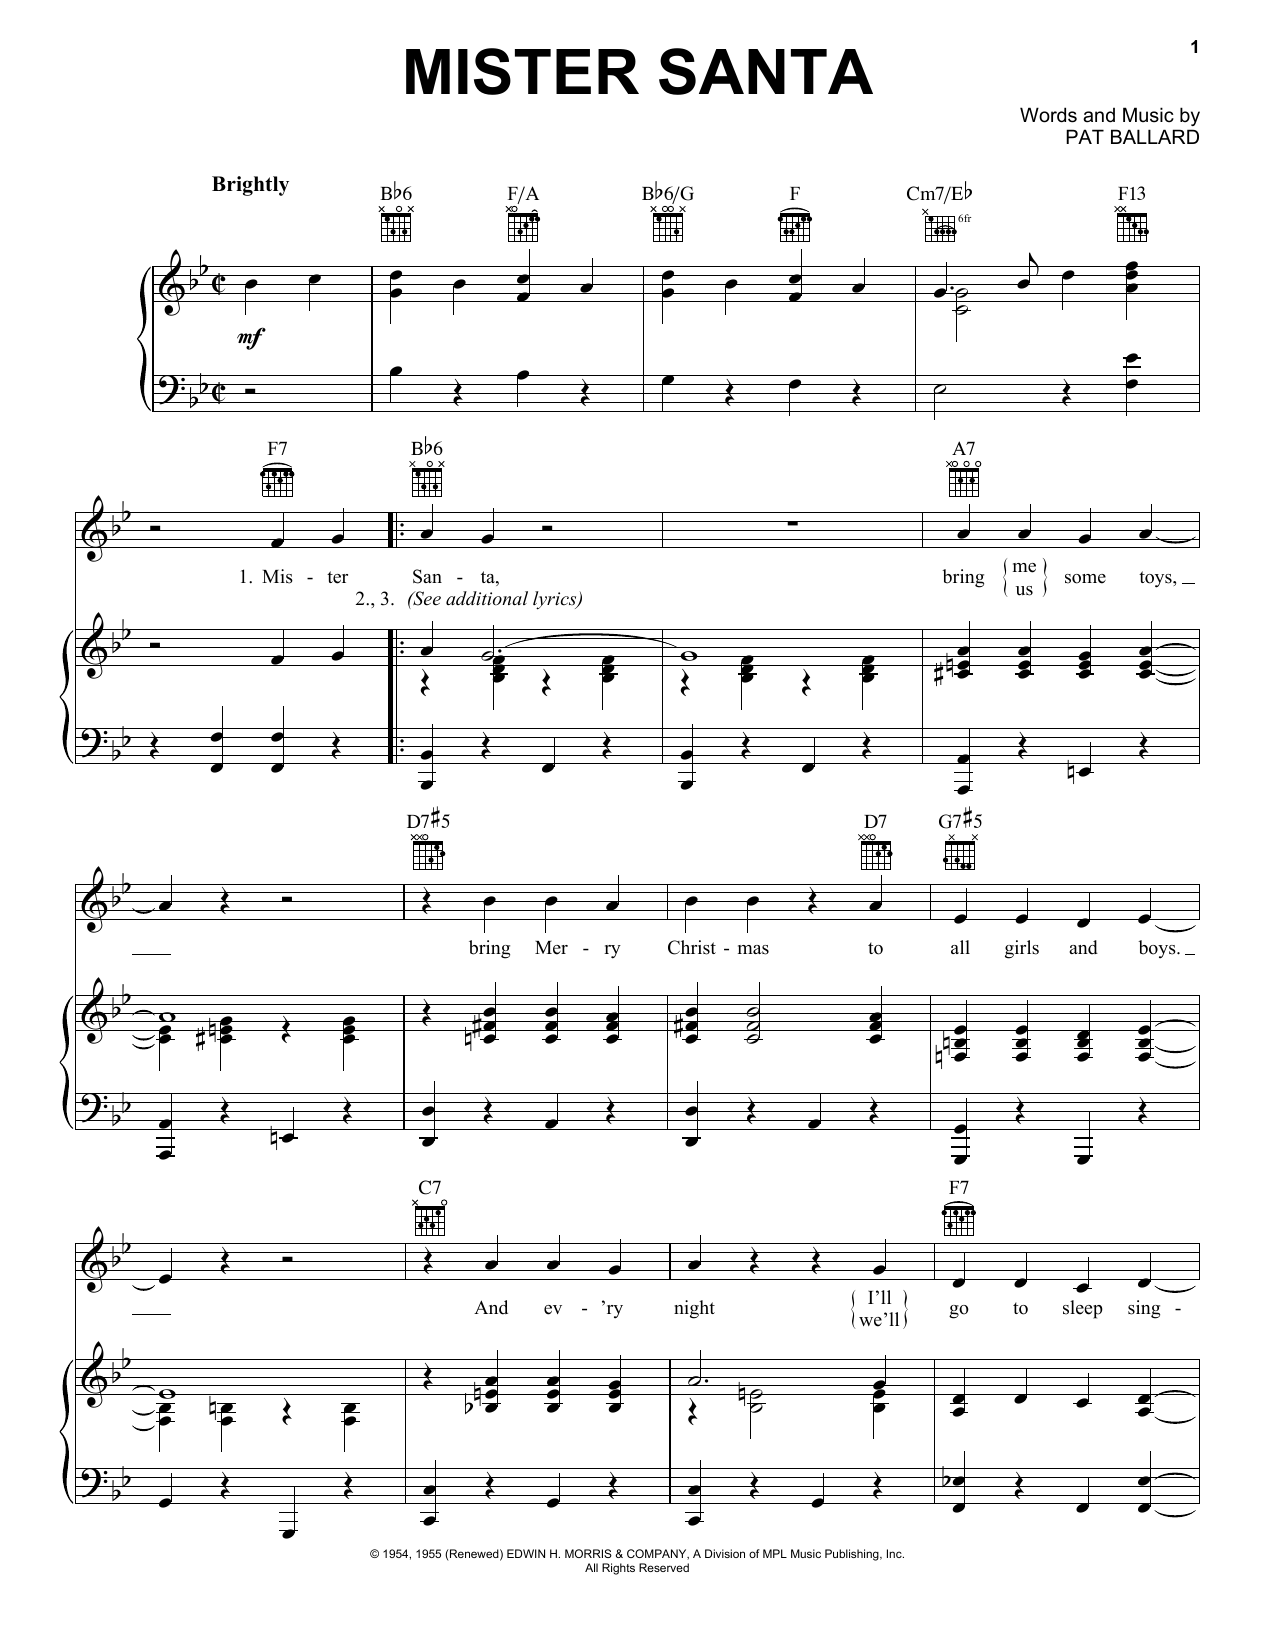 Pat Ballard Mister Santa Sheet Music Notes & Chords for Piano (Big Notes) - Download or Print PDF